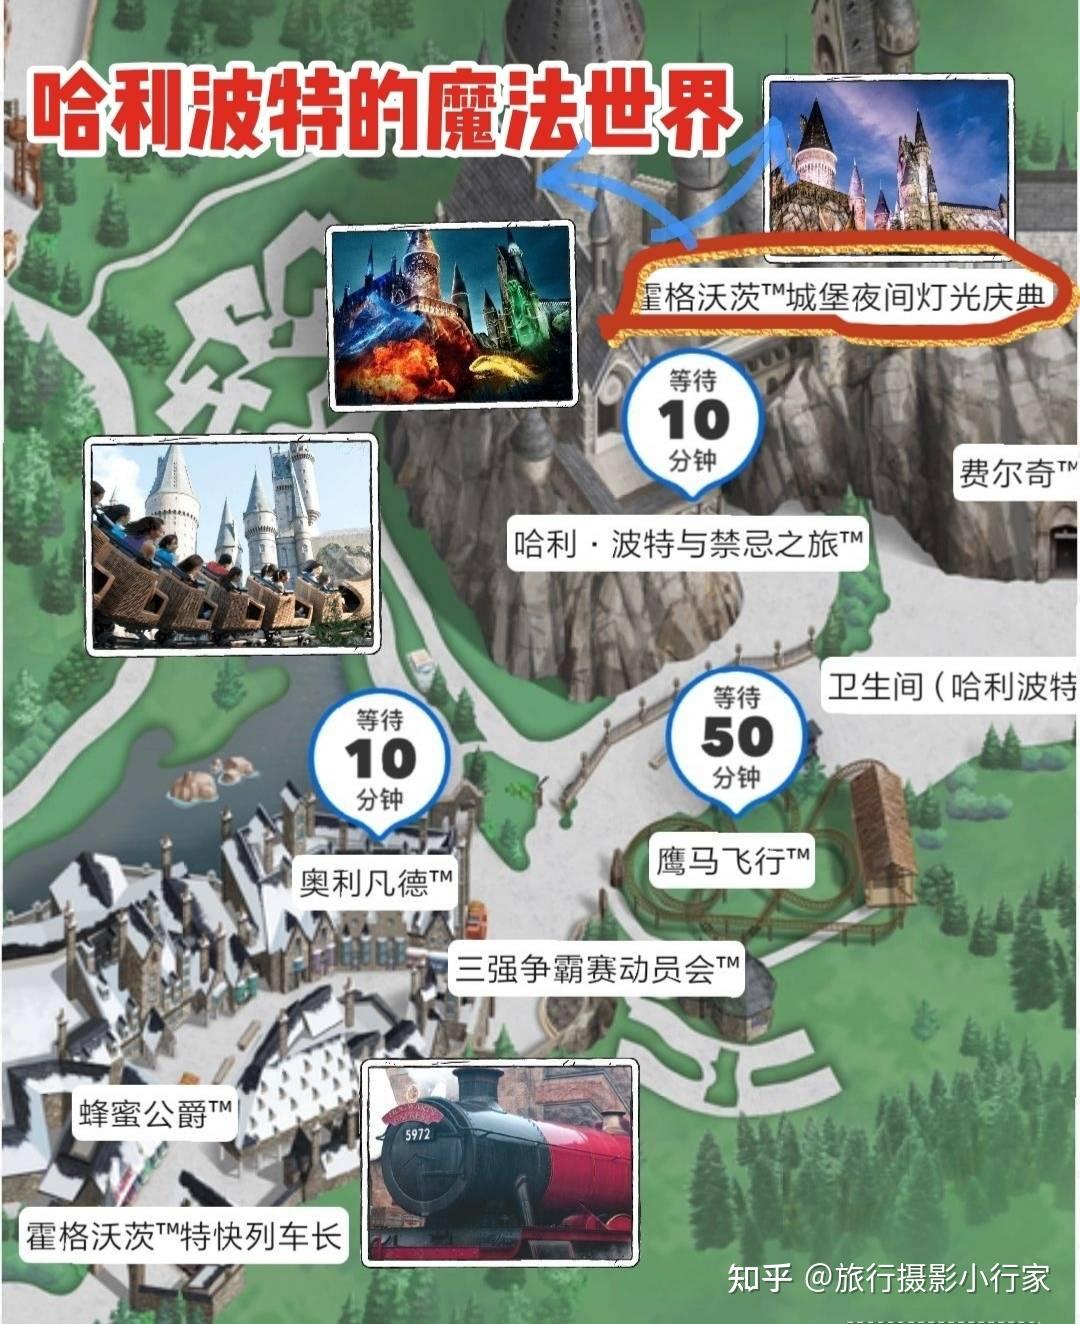 北京环球影城游玩行李寄存攻略园区地图门票预约